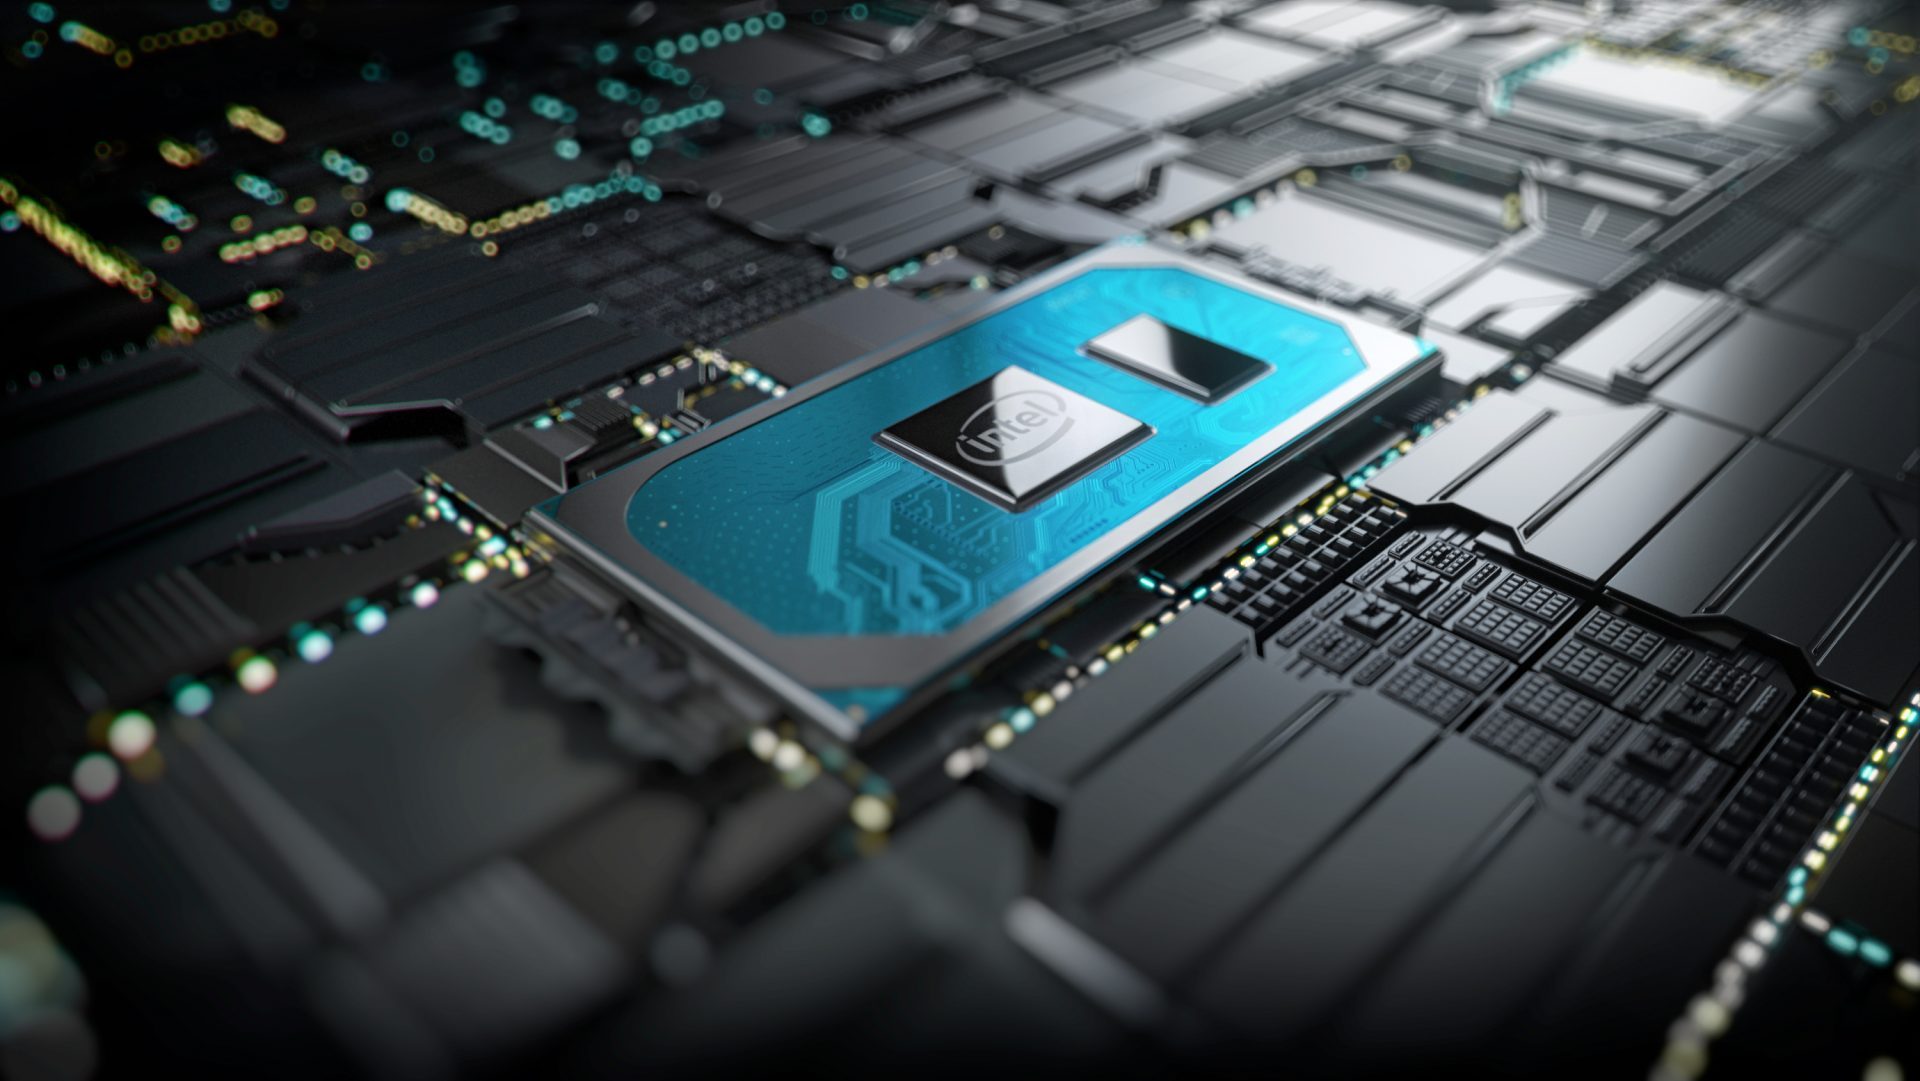 Intel tillkännagav den 10: e generationens Core i-processor som fokuserar på 2 i 1 datorer och bärbara datorer